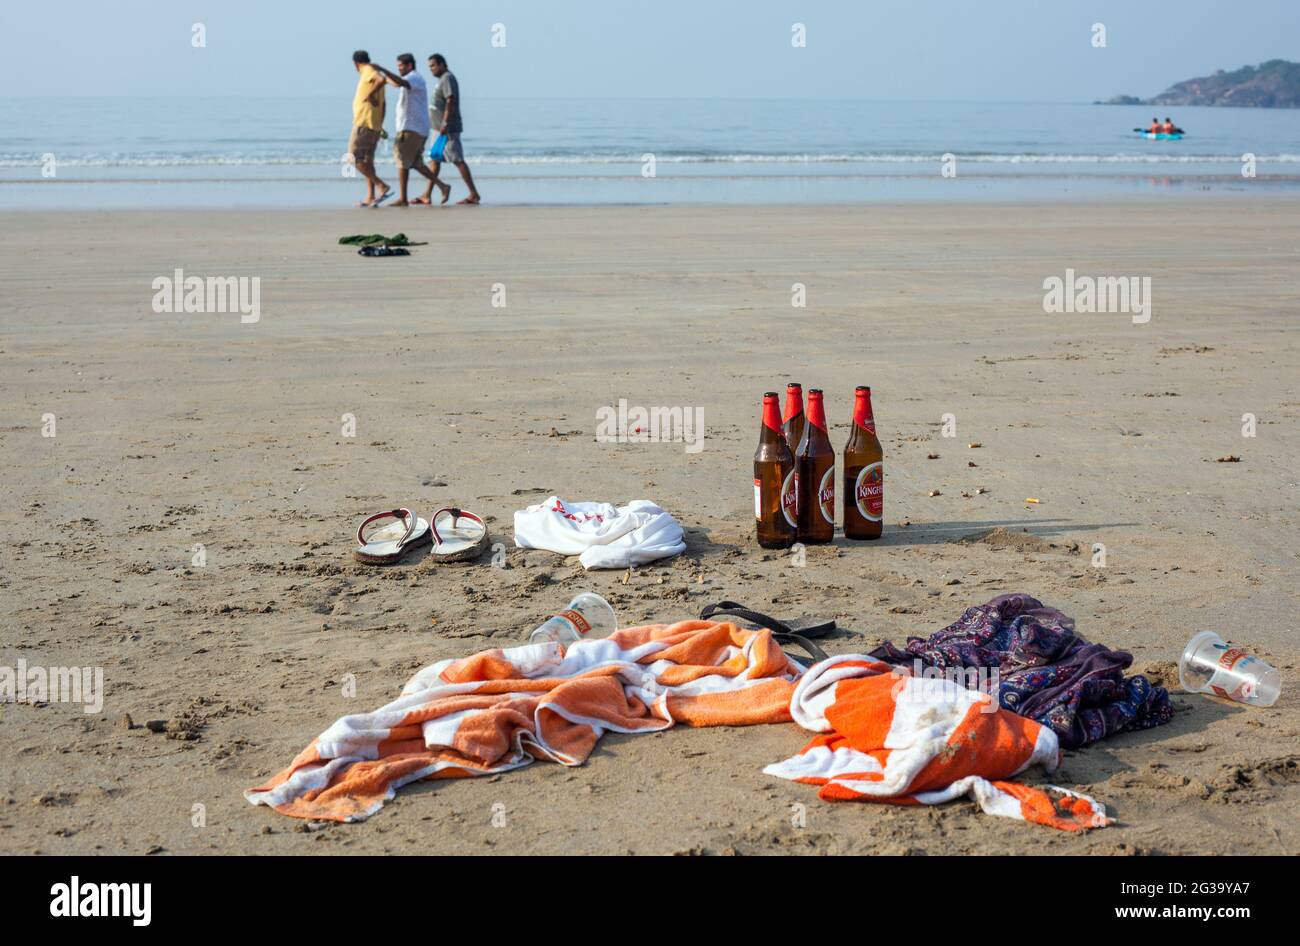 Bouteilles de bière et serviettes laissées sur une plage vide et trois gars indiens se promènent au bord de la mer, Agonda, Goa, Inde Banque D'Images